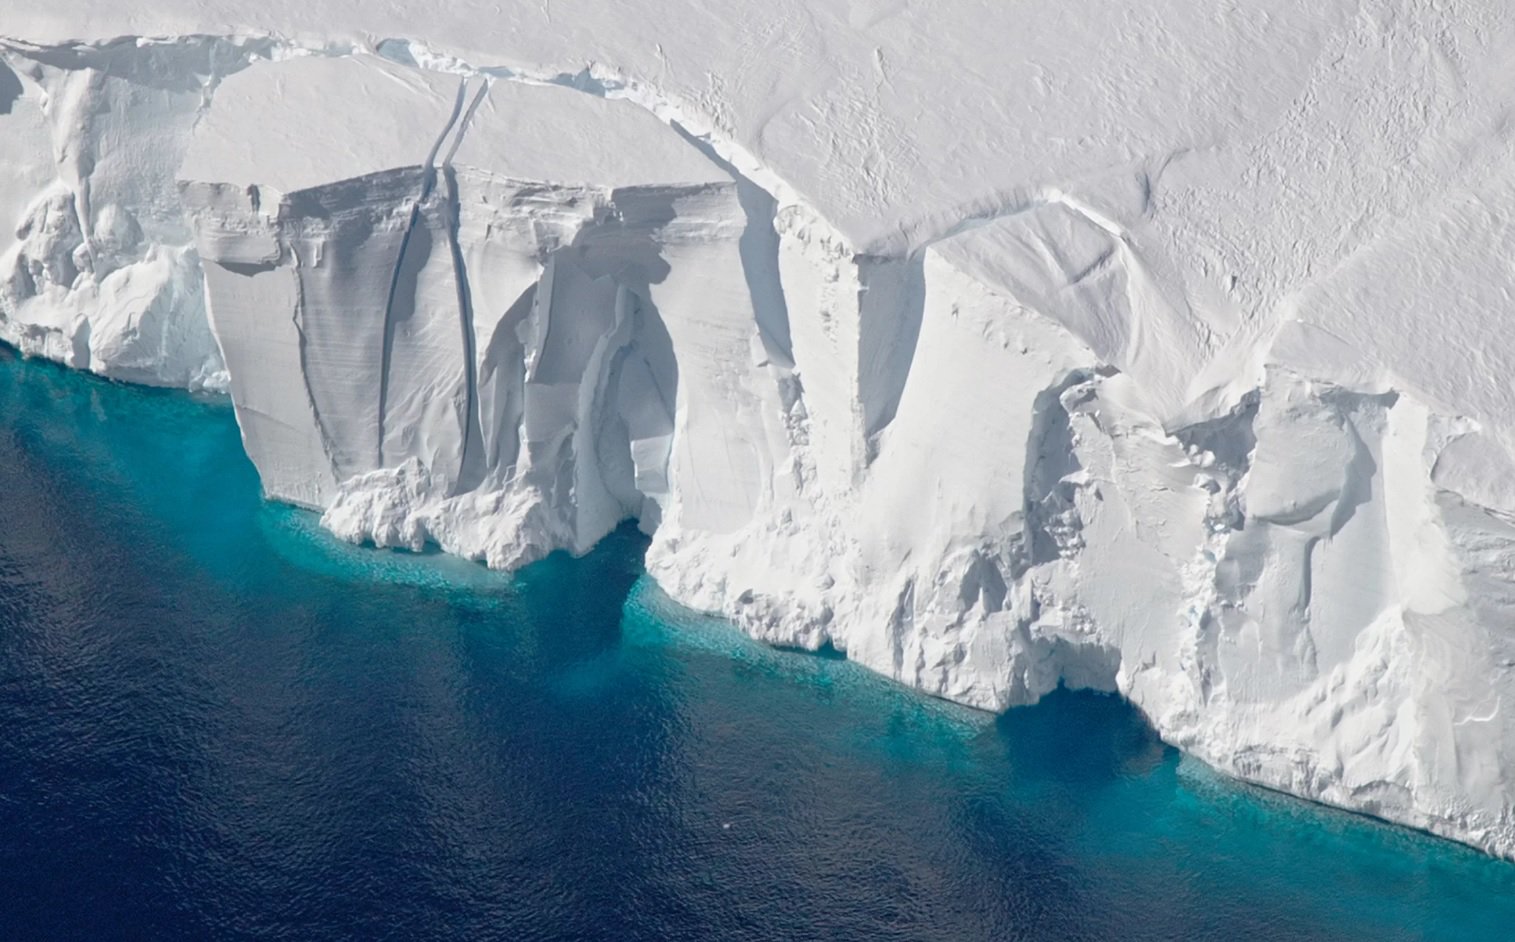 Запасы льда в Антарктиде за последние 25 лет существенно сократились